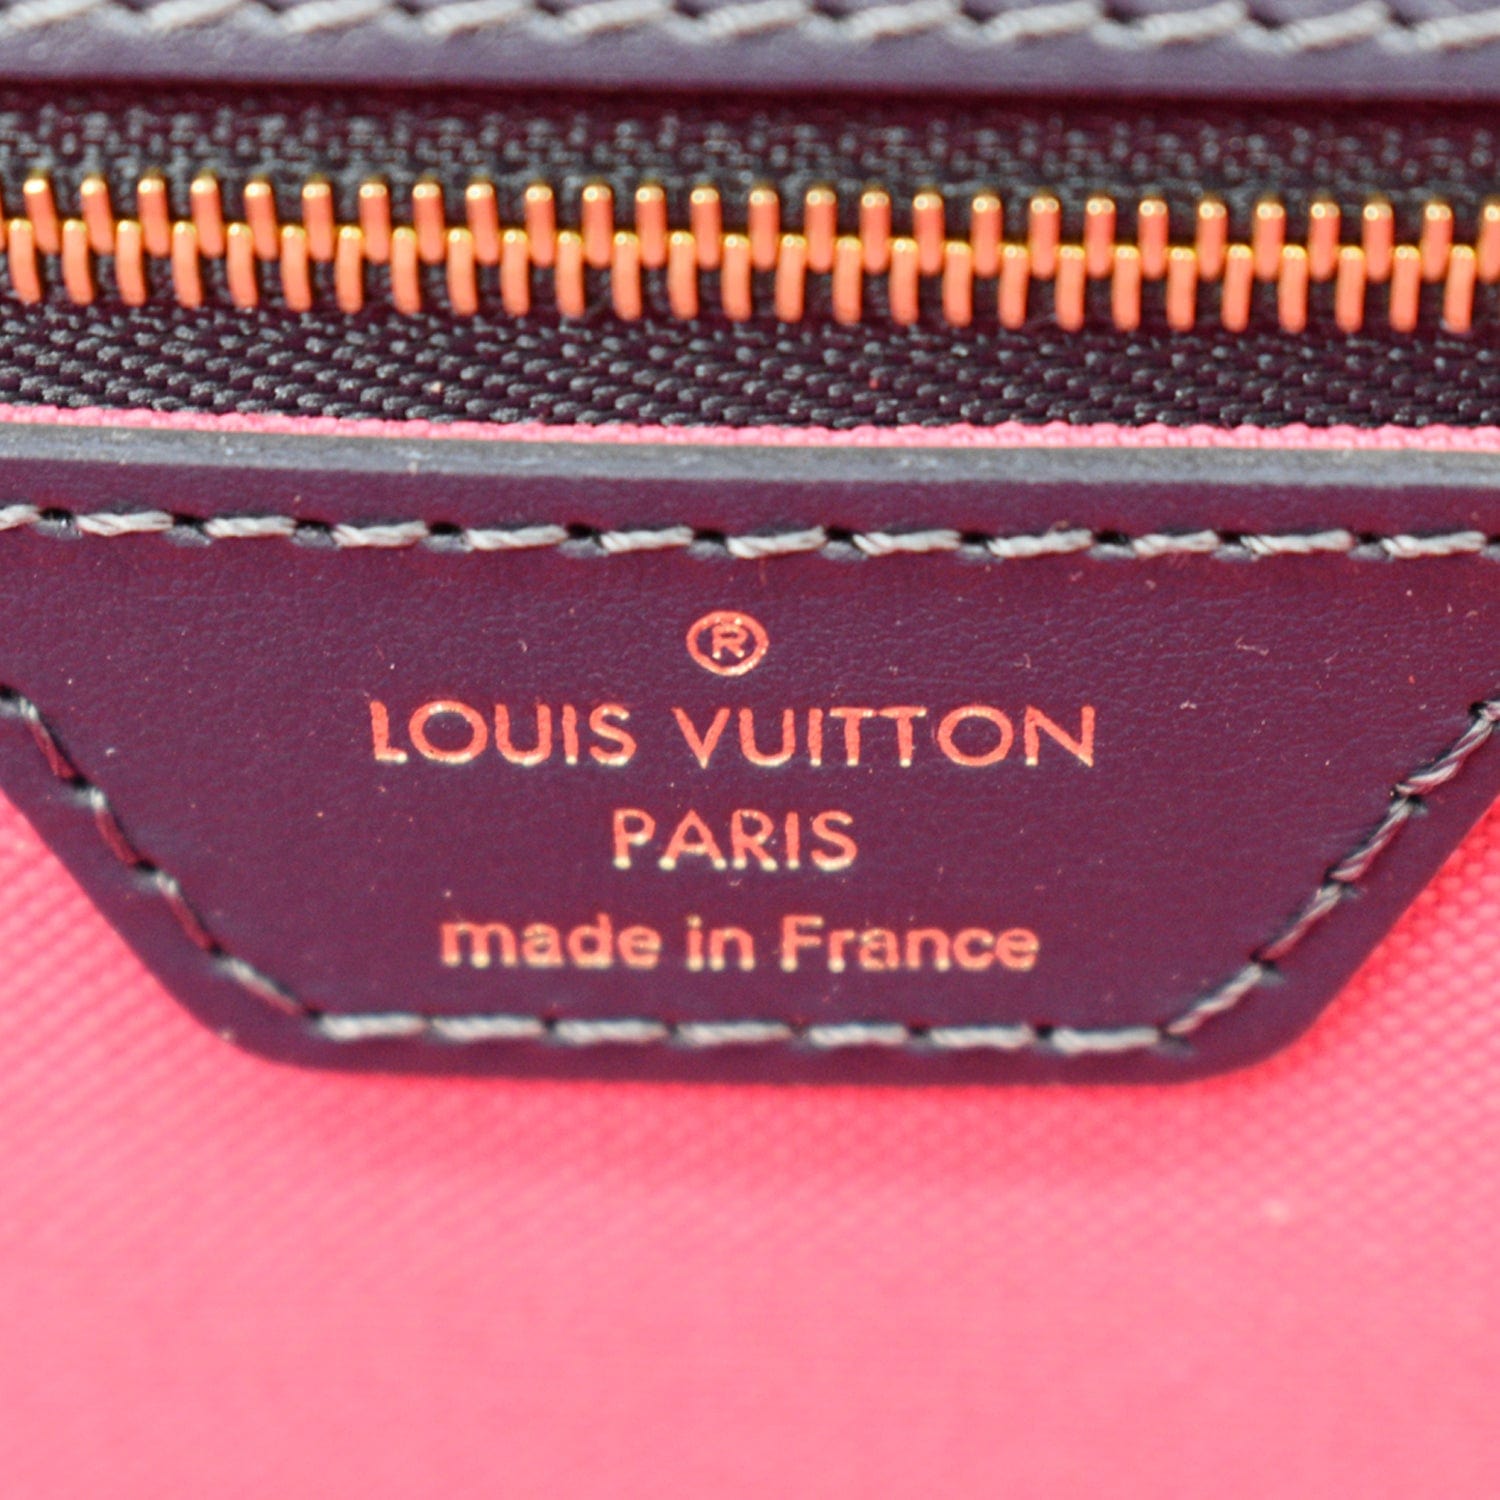 Louis Vuitton Neverfull MM Midnight Fuchsia